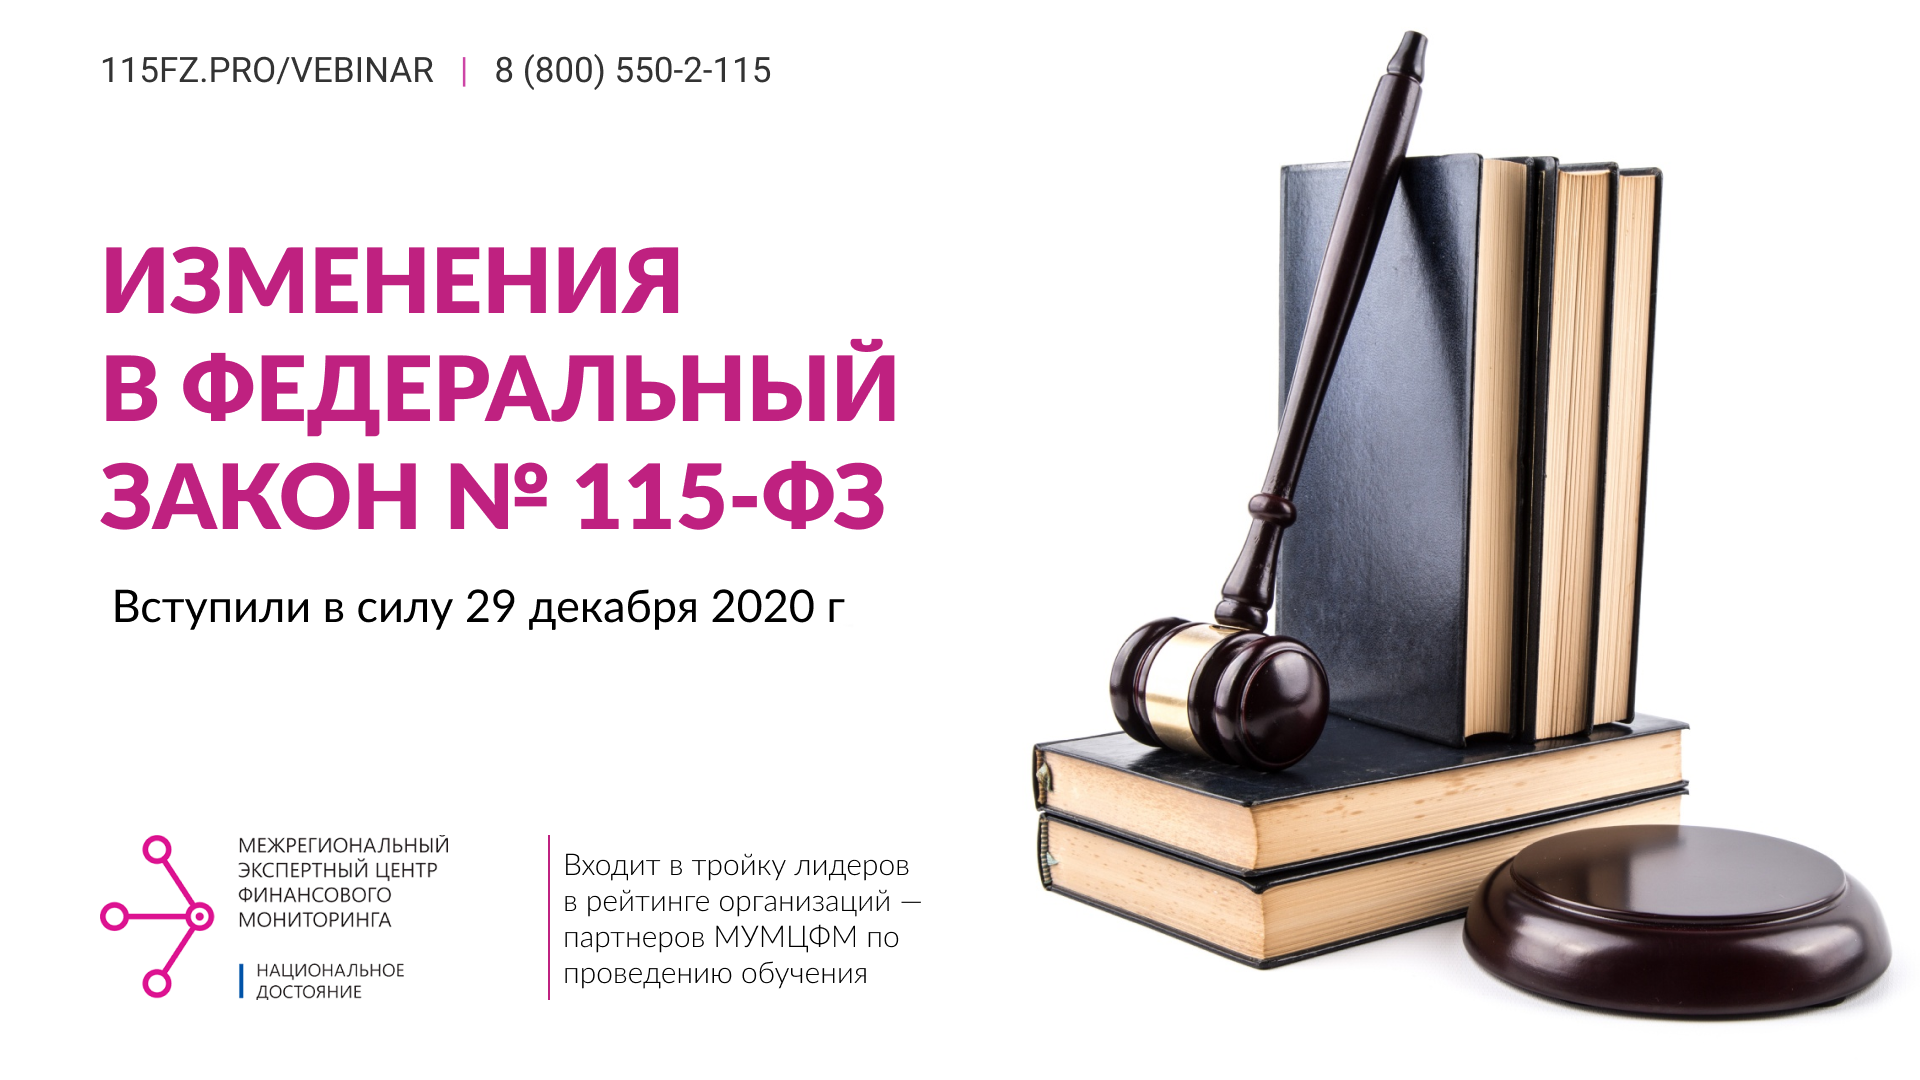 Изменения в Федеральный закон №115-ФЗ вступили в силу 29 декабря 2020 г. 